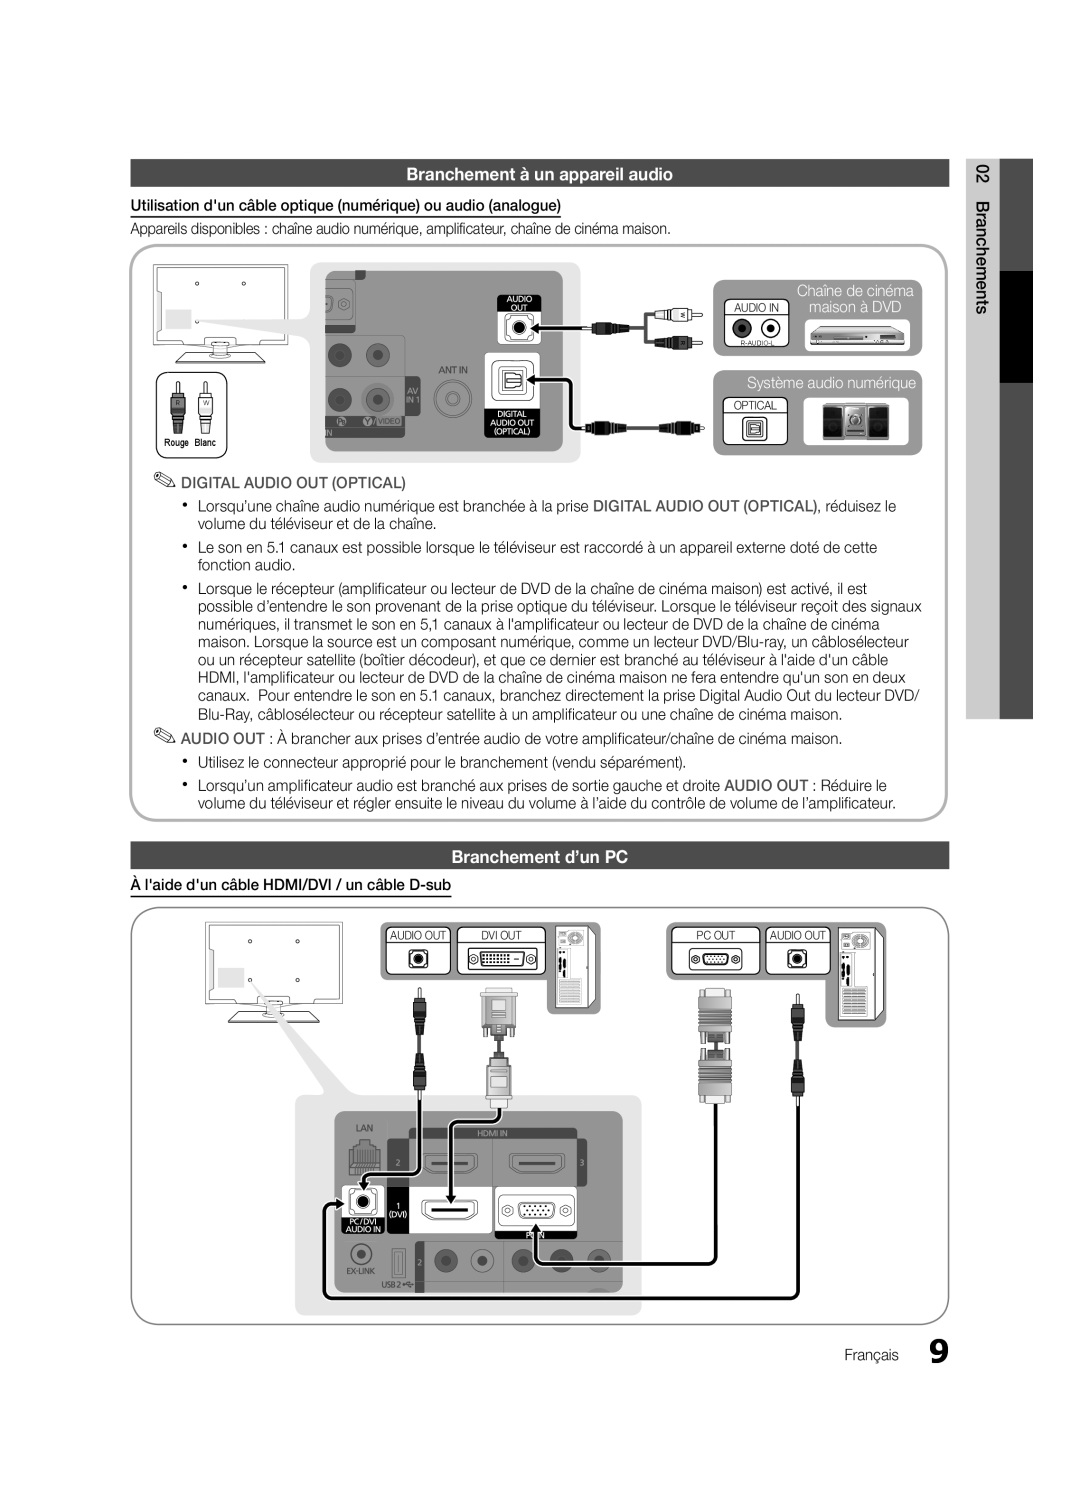 Samsung LN32C550 user manual Branchement à un appareil audio, Branchement d’un PC, Chaîne de cinéma AUDIO IN maison à DVD 